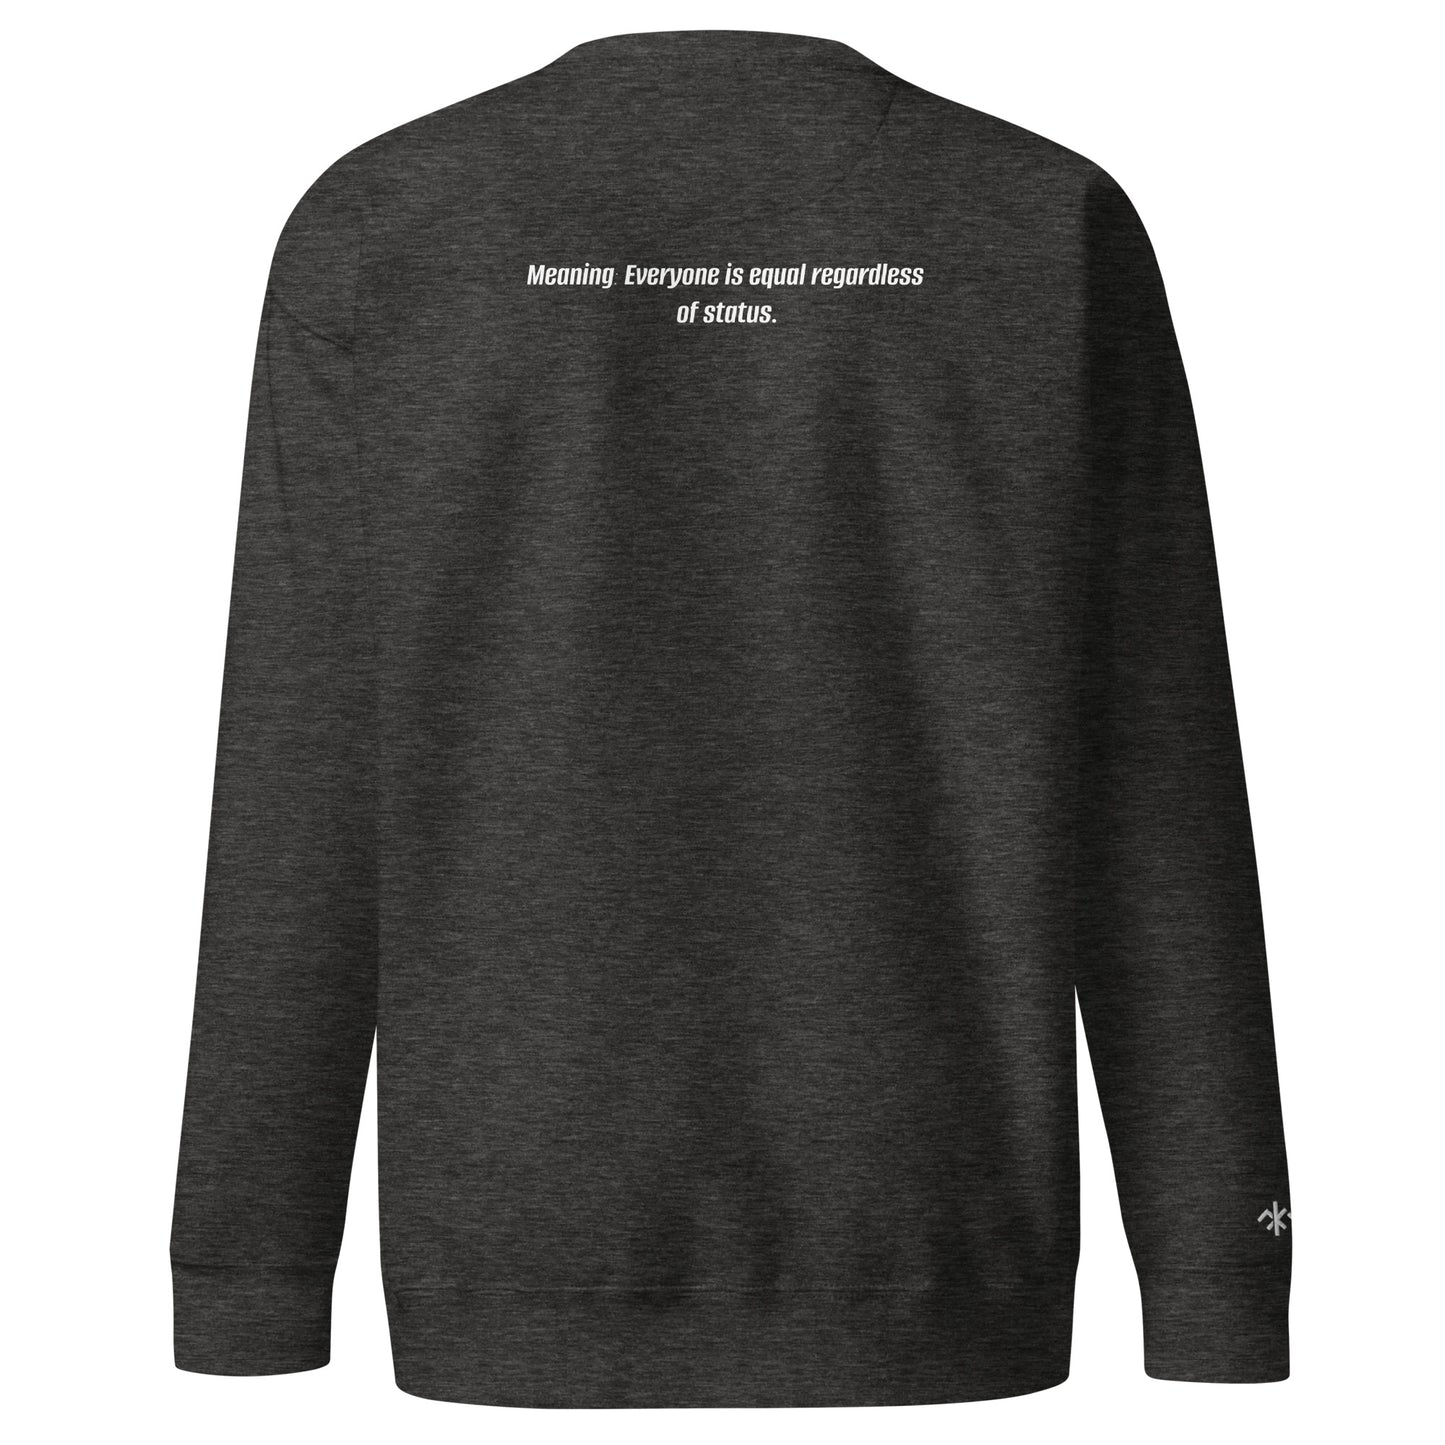 KMF Equanimity Premium Sweatshirt